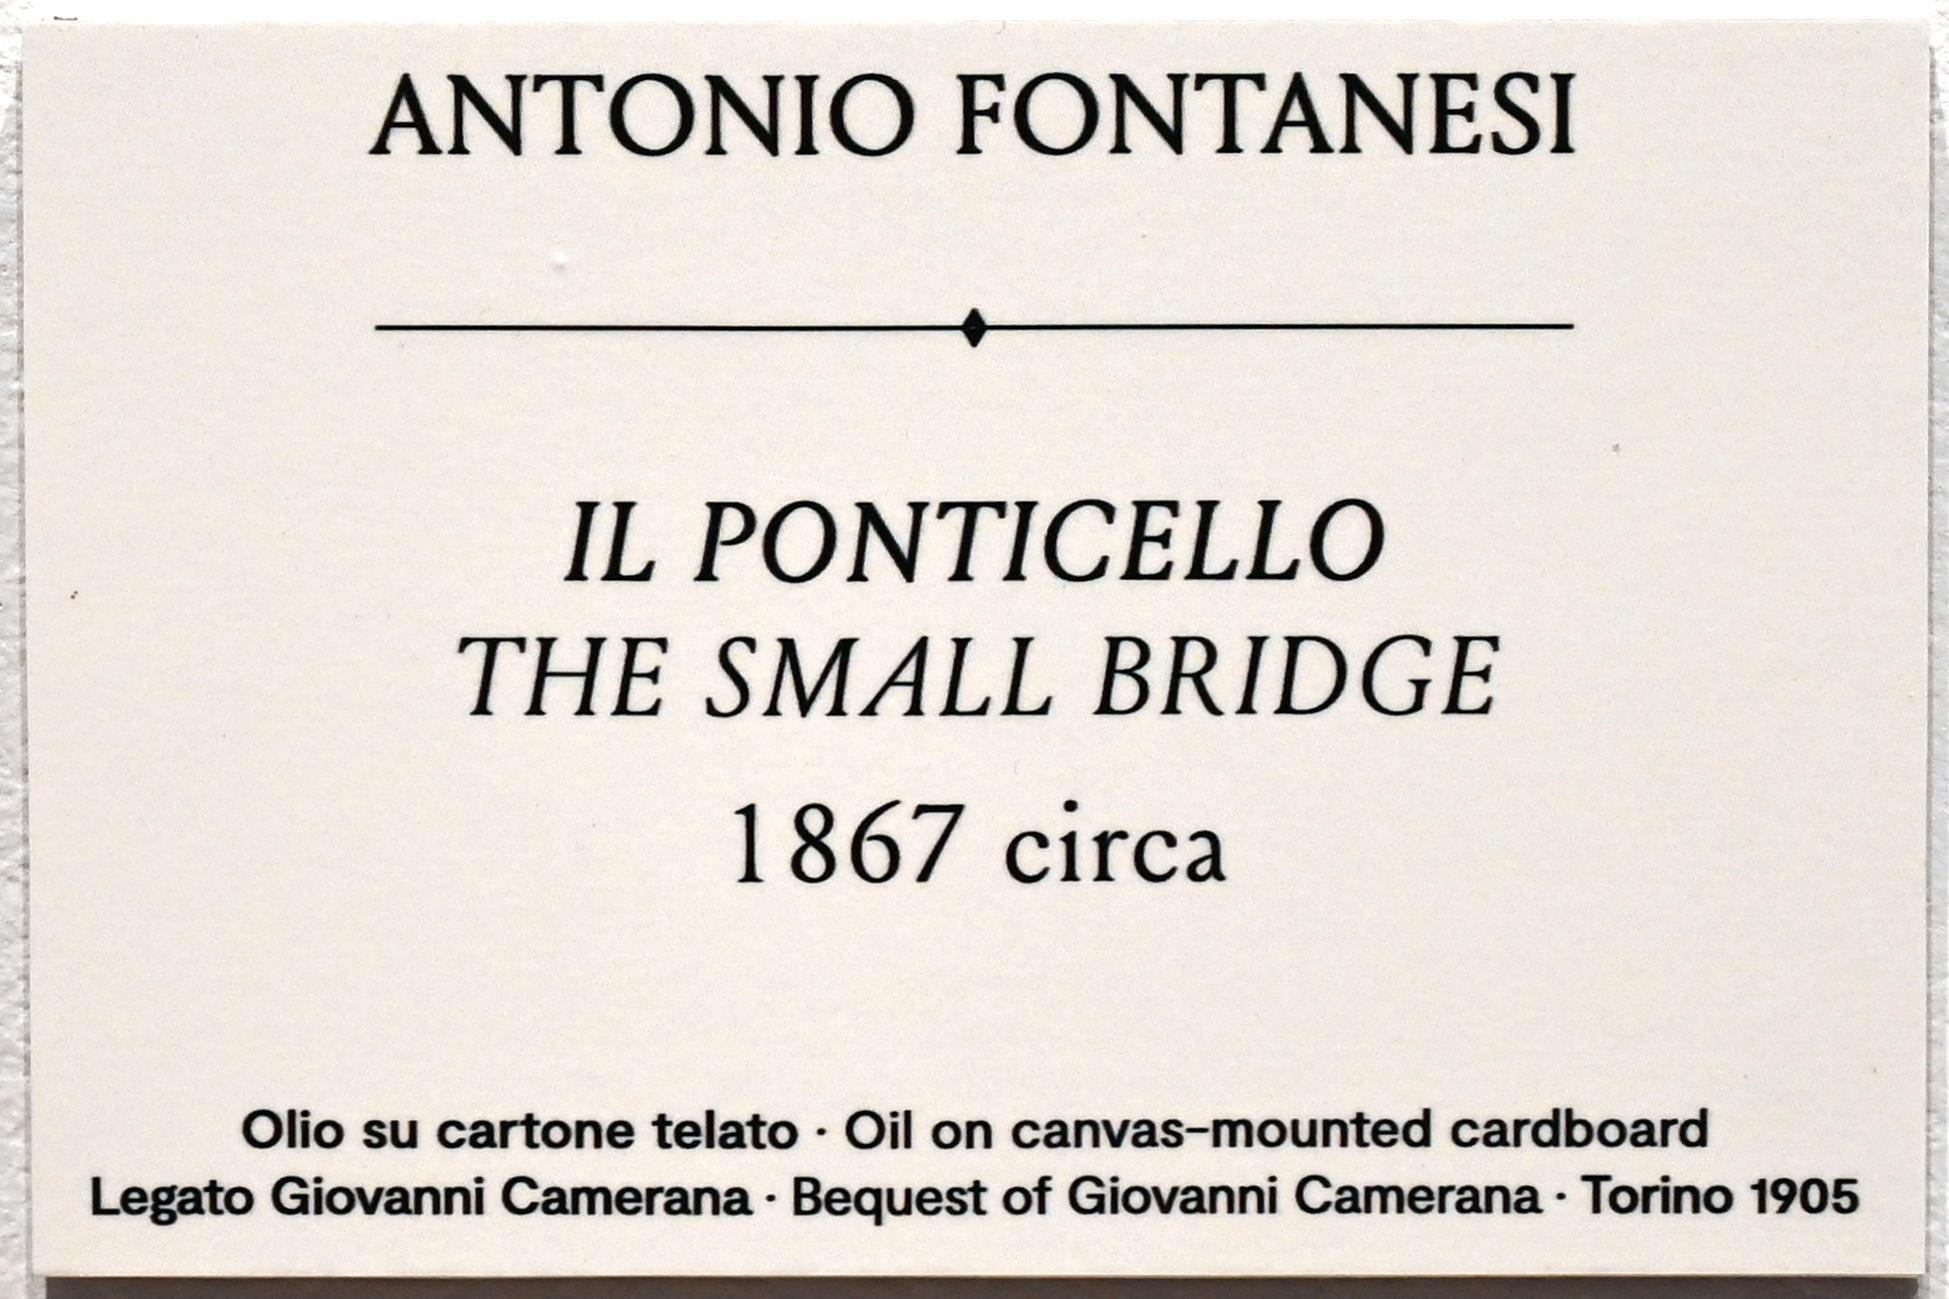 Antonio Fontanesi (1862–1870), Die kleine Brücke, Turin, GAM Torino, Ausstellung "Natur und Wahrheit" vom 09.07.-17.10.2021, um 1867, Bild 2/2